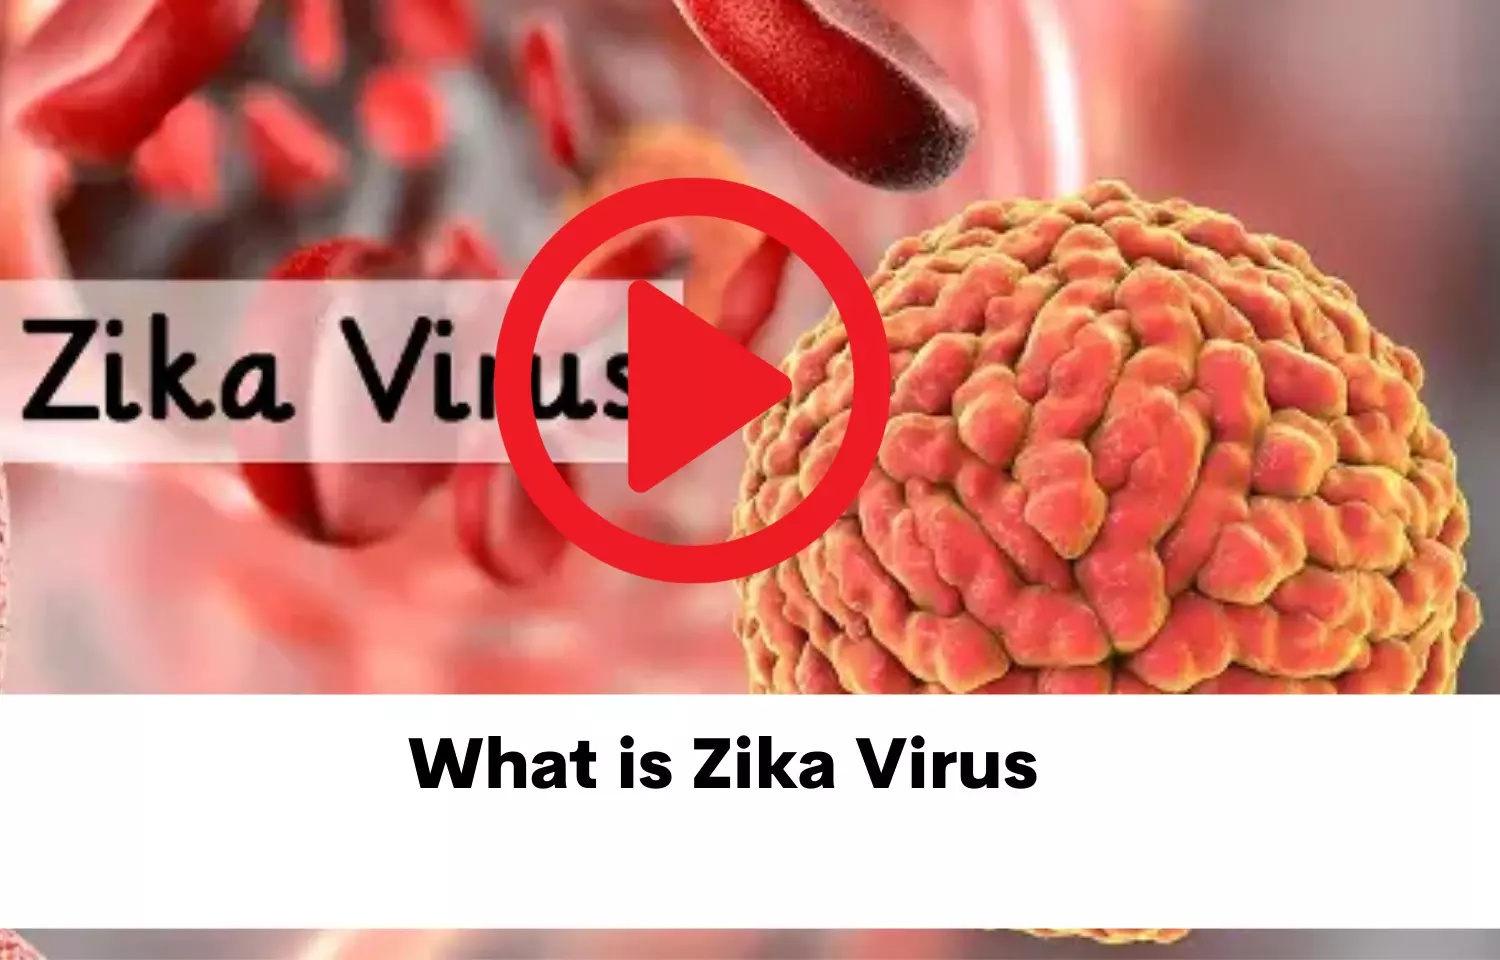 What is Zika virus